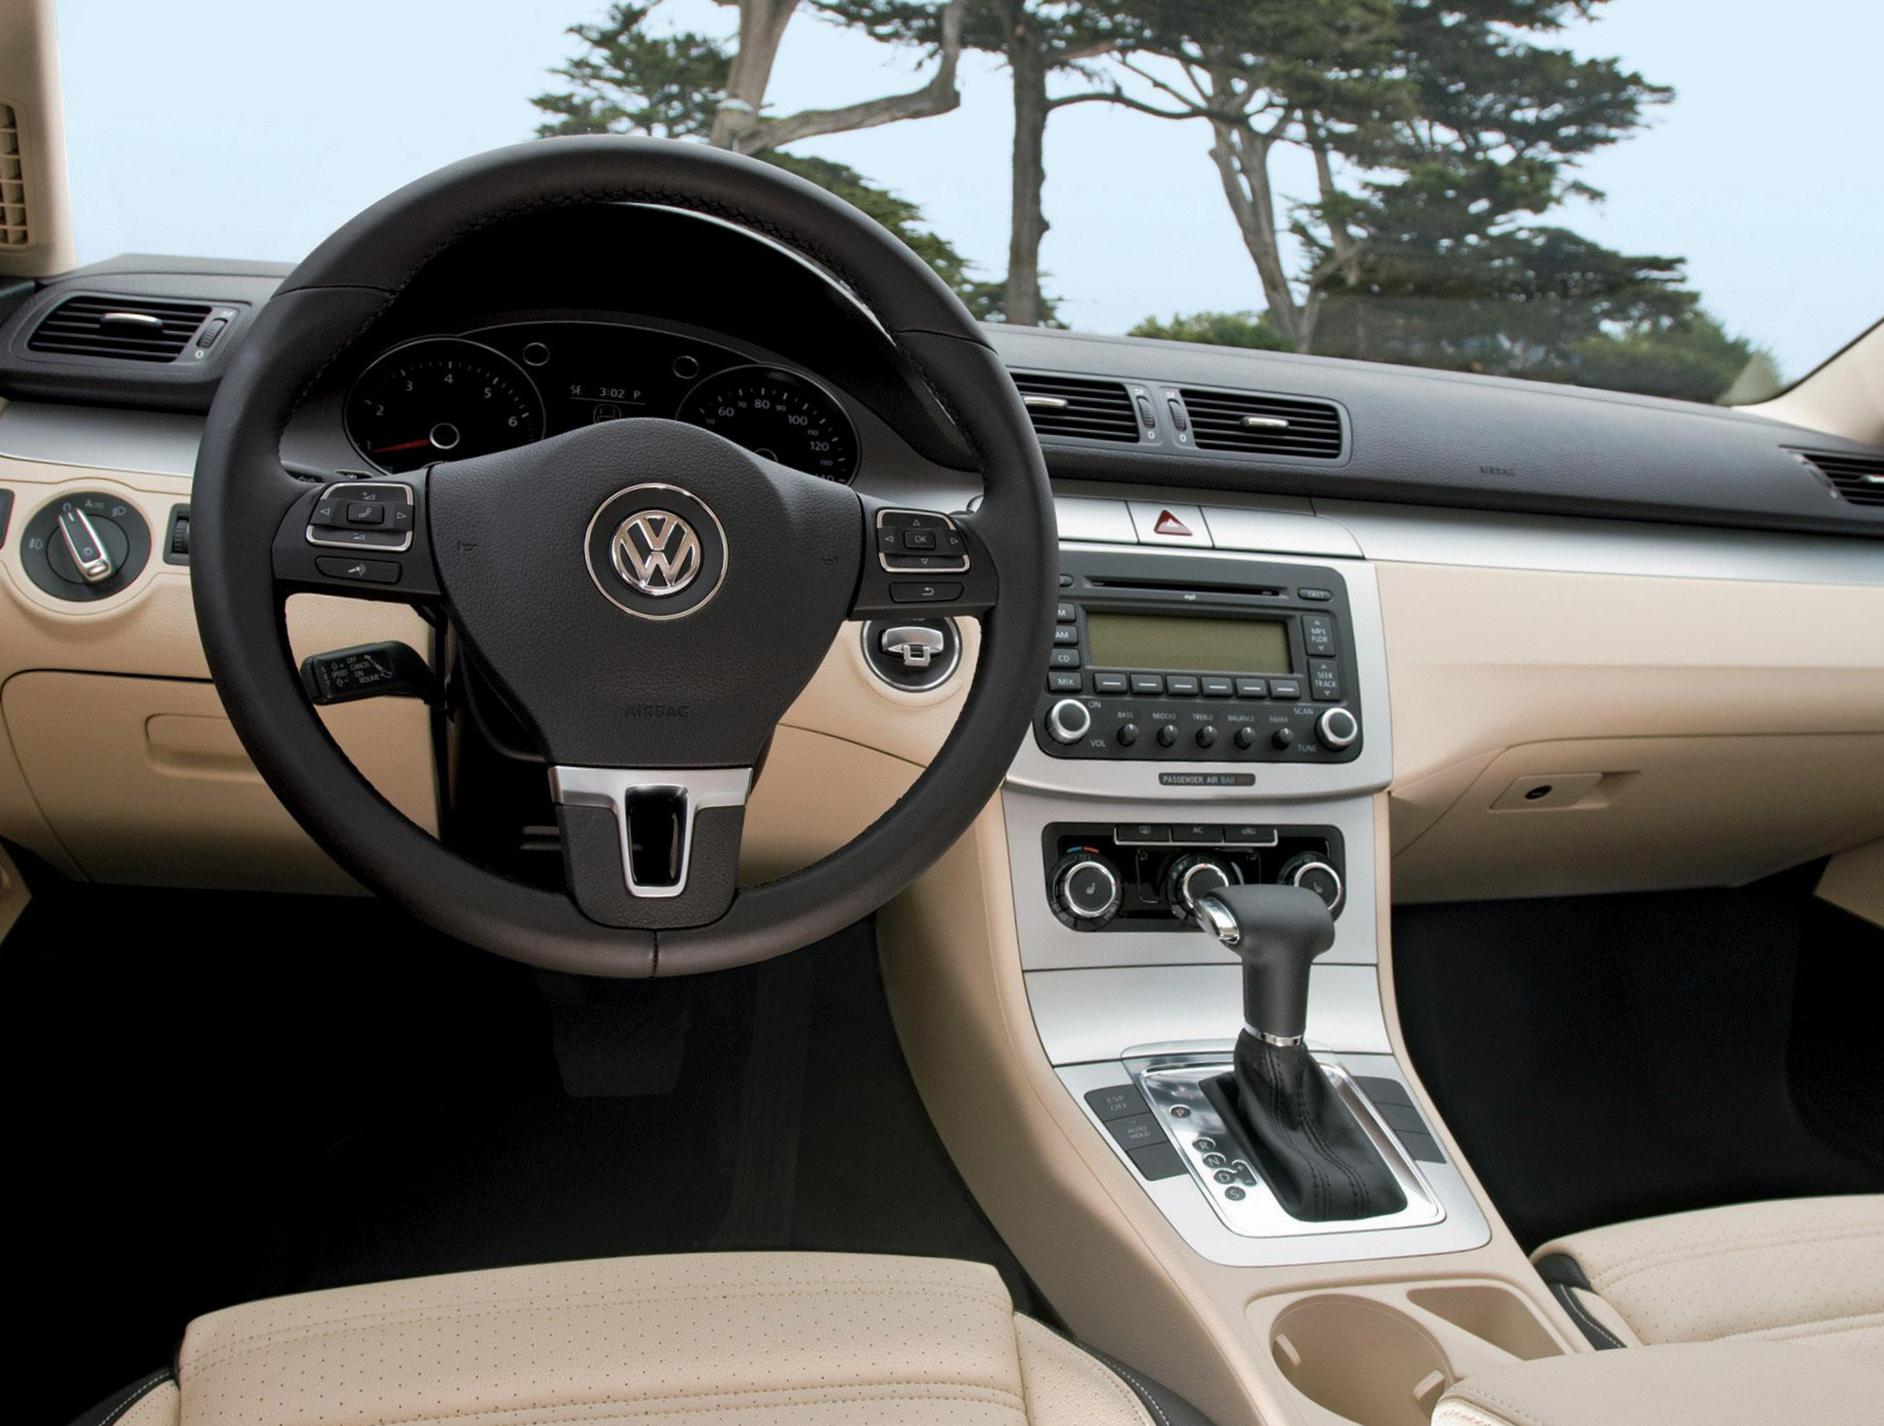 Volkswagen Passat CC review 2003